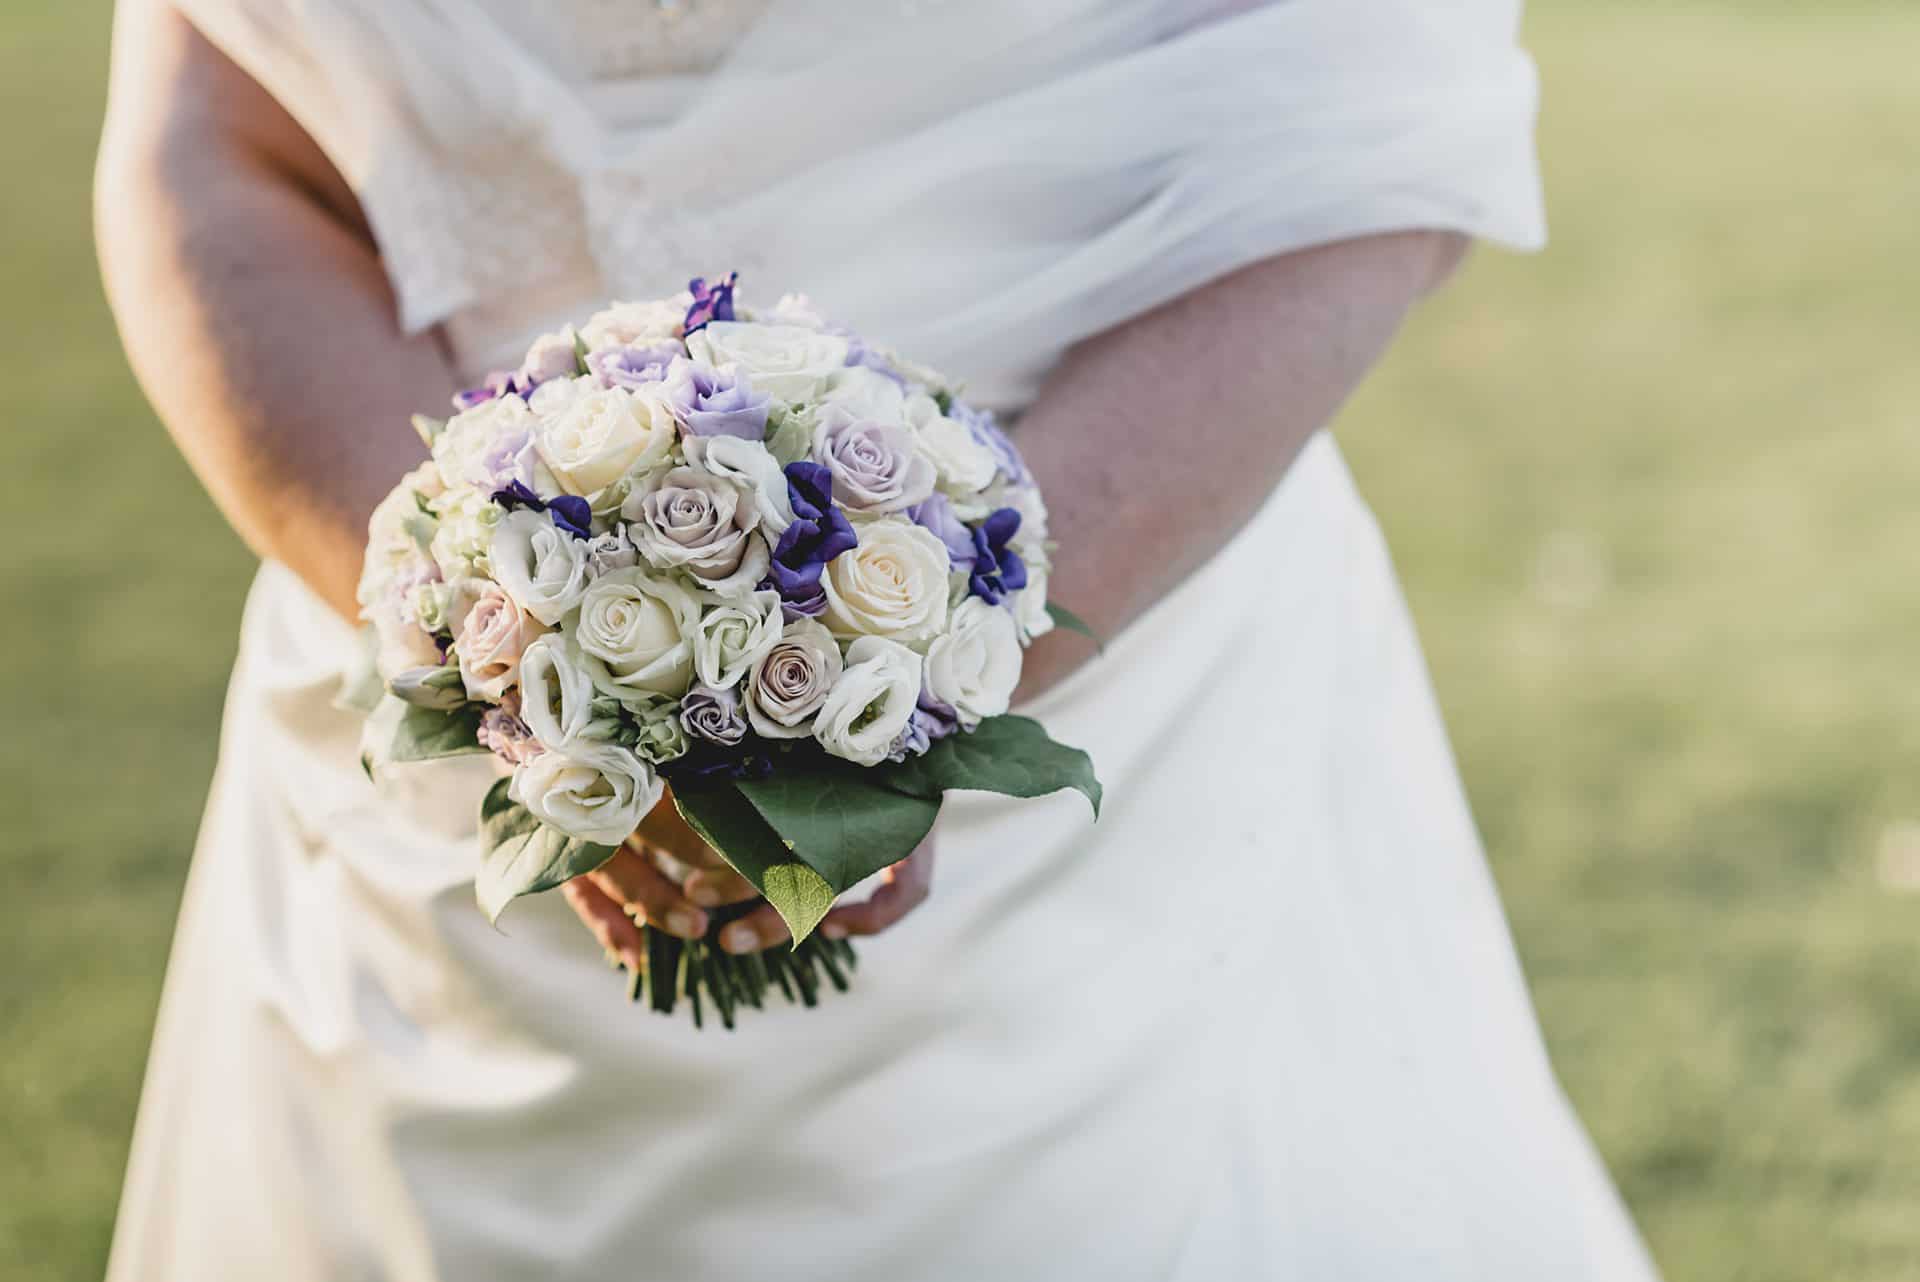 Eine Braut hält einen Strauß lila und weißer Blumen.